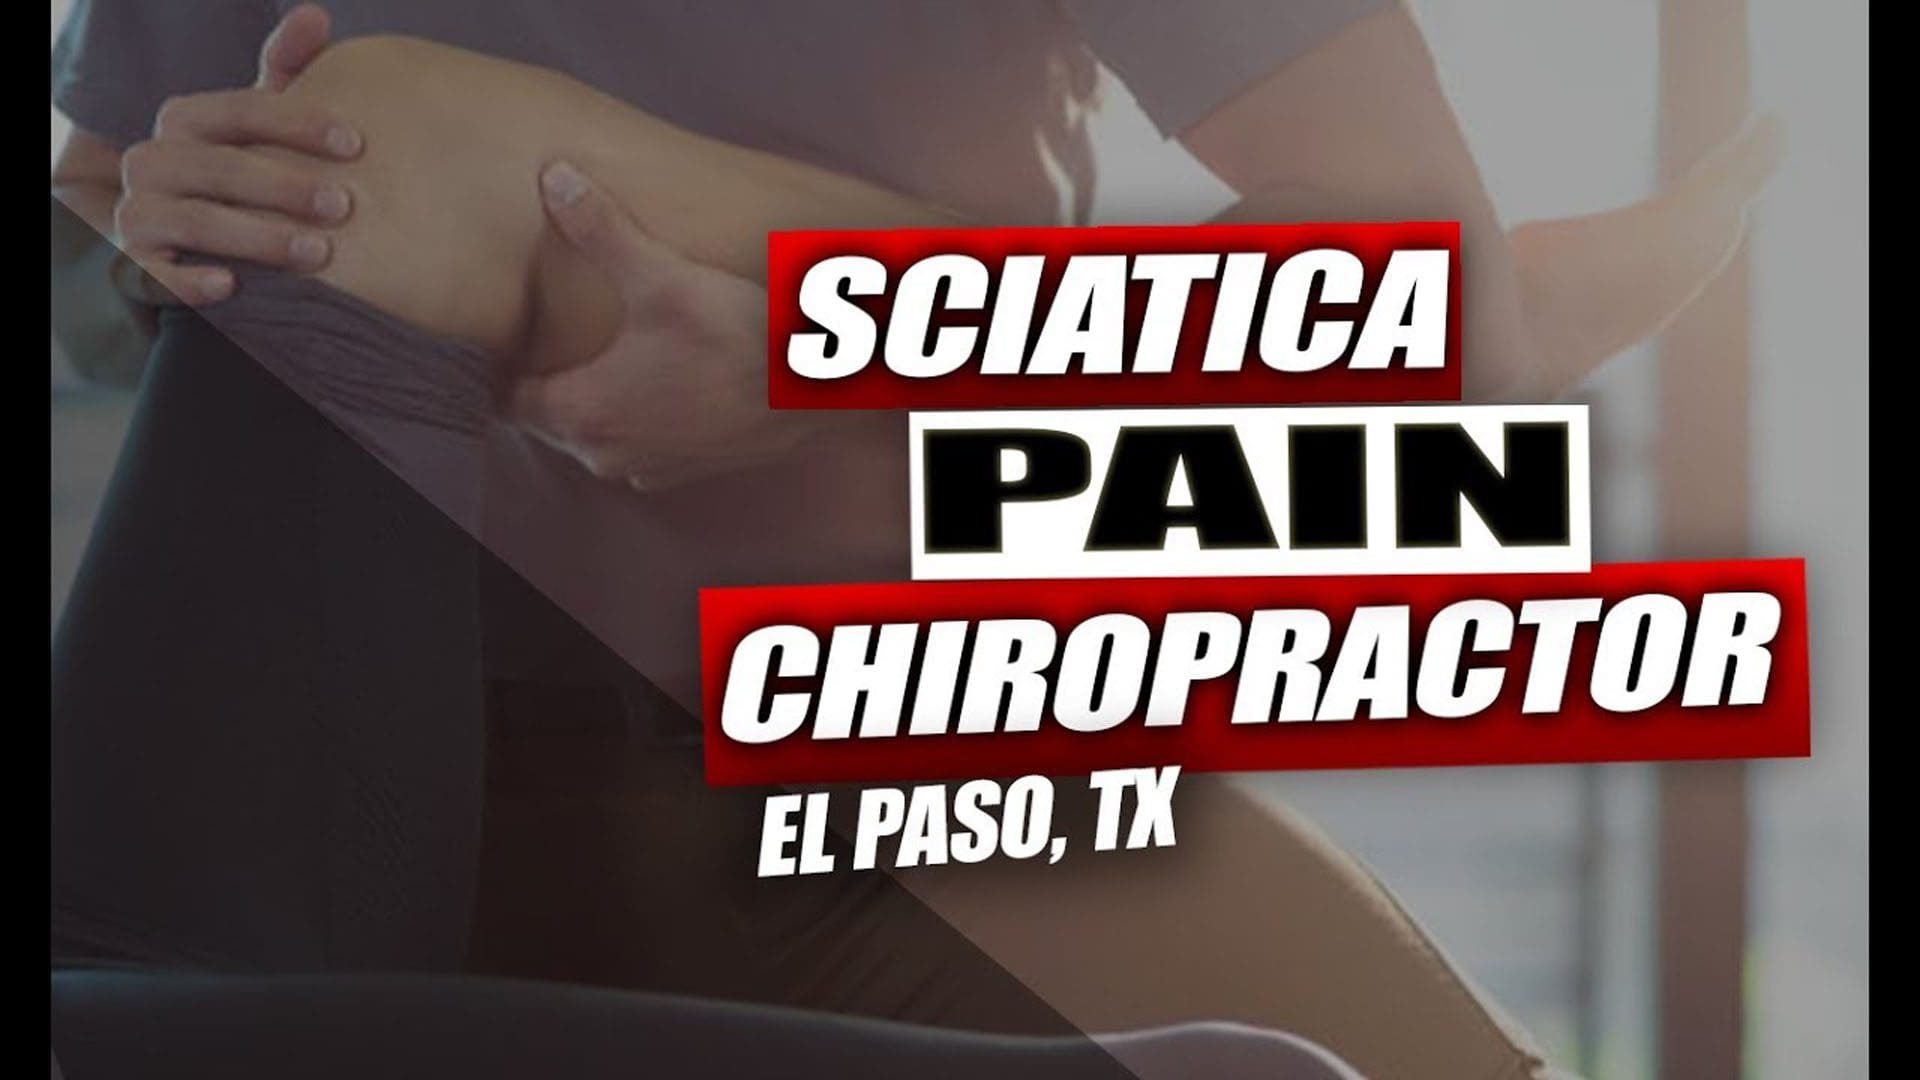 sciatica pain chiropractor el paso tx.